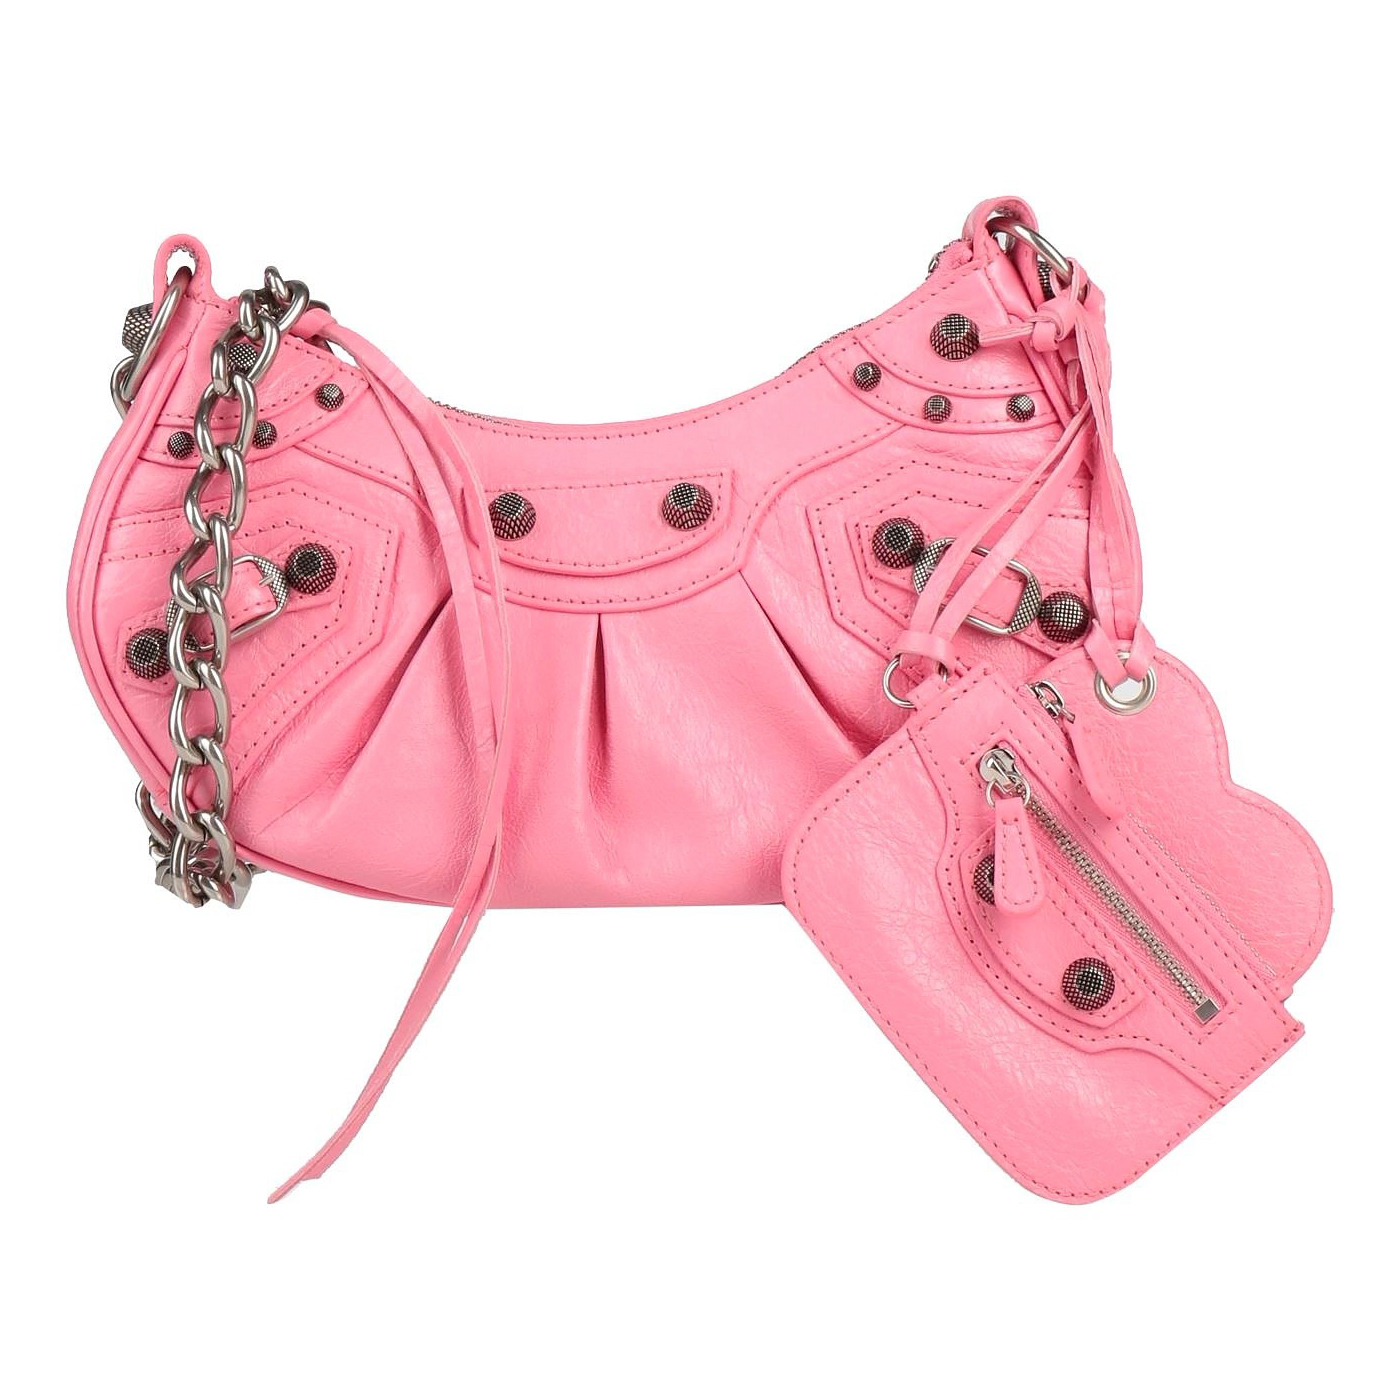 Сумка Balenciaga, розовый сумка розовая сумка женская розовая розовая сумочка женские с широким ремнем сумки тренд 2023 весна светлая сумка сумка женская